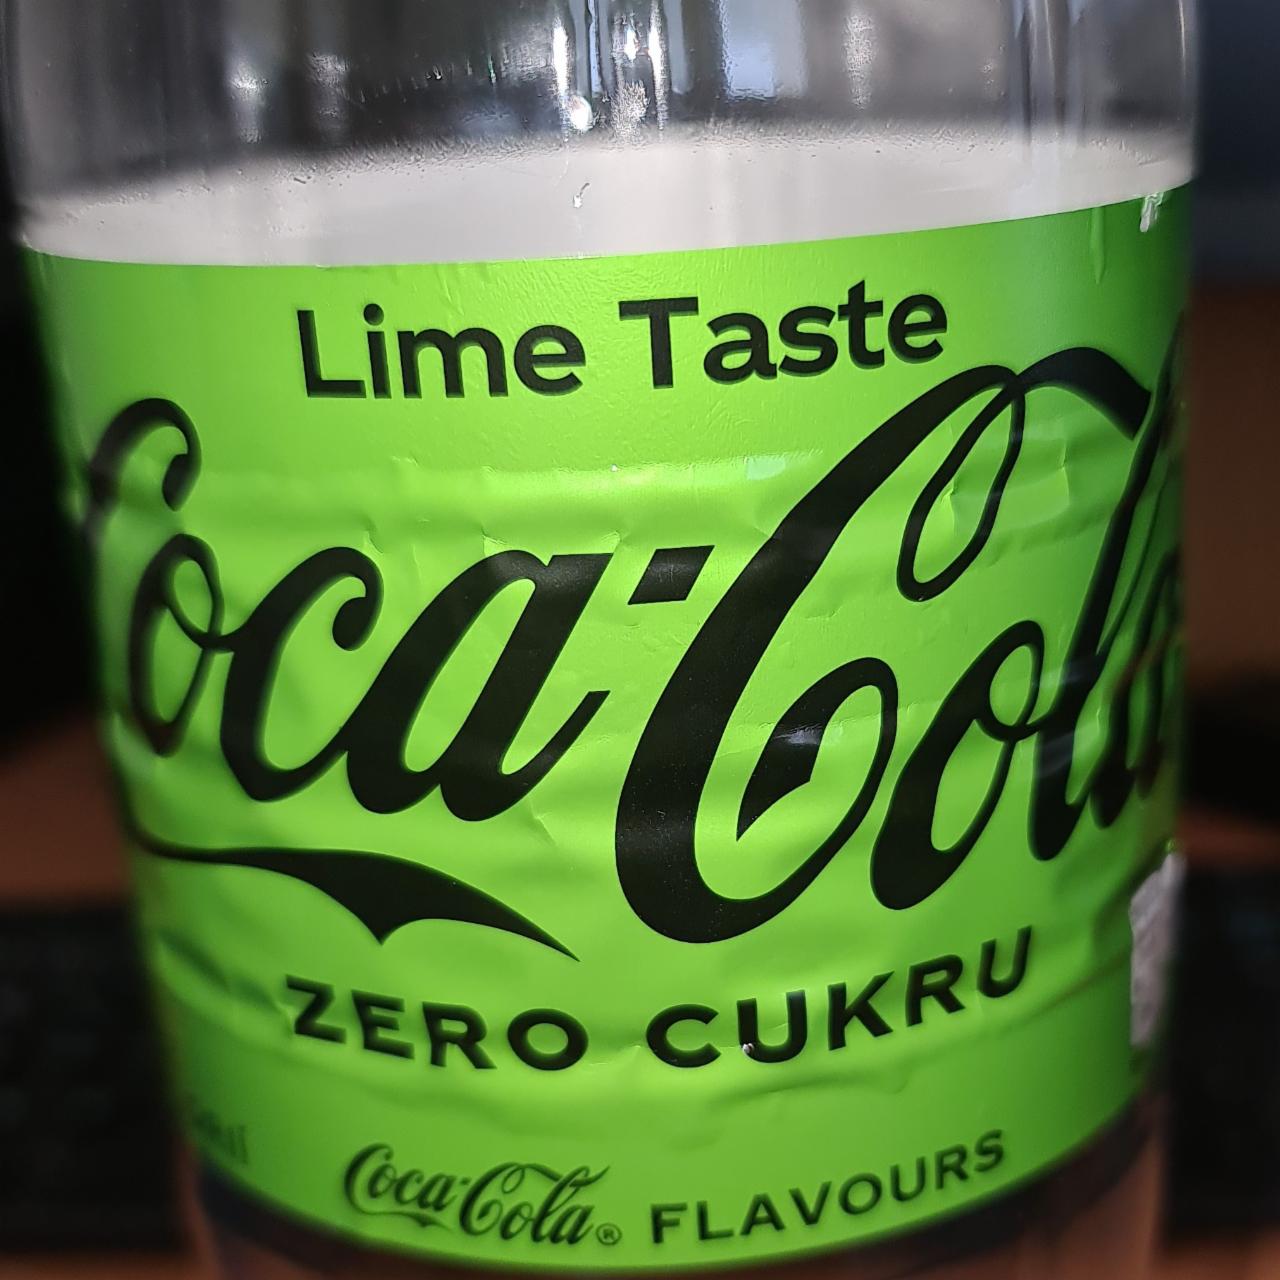 Fotografie - Coca-Cola Lime Taste Zero Cukru